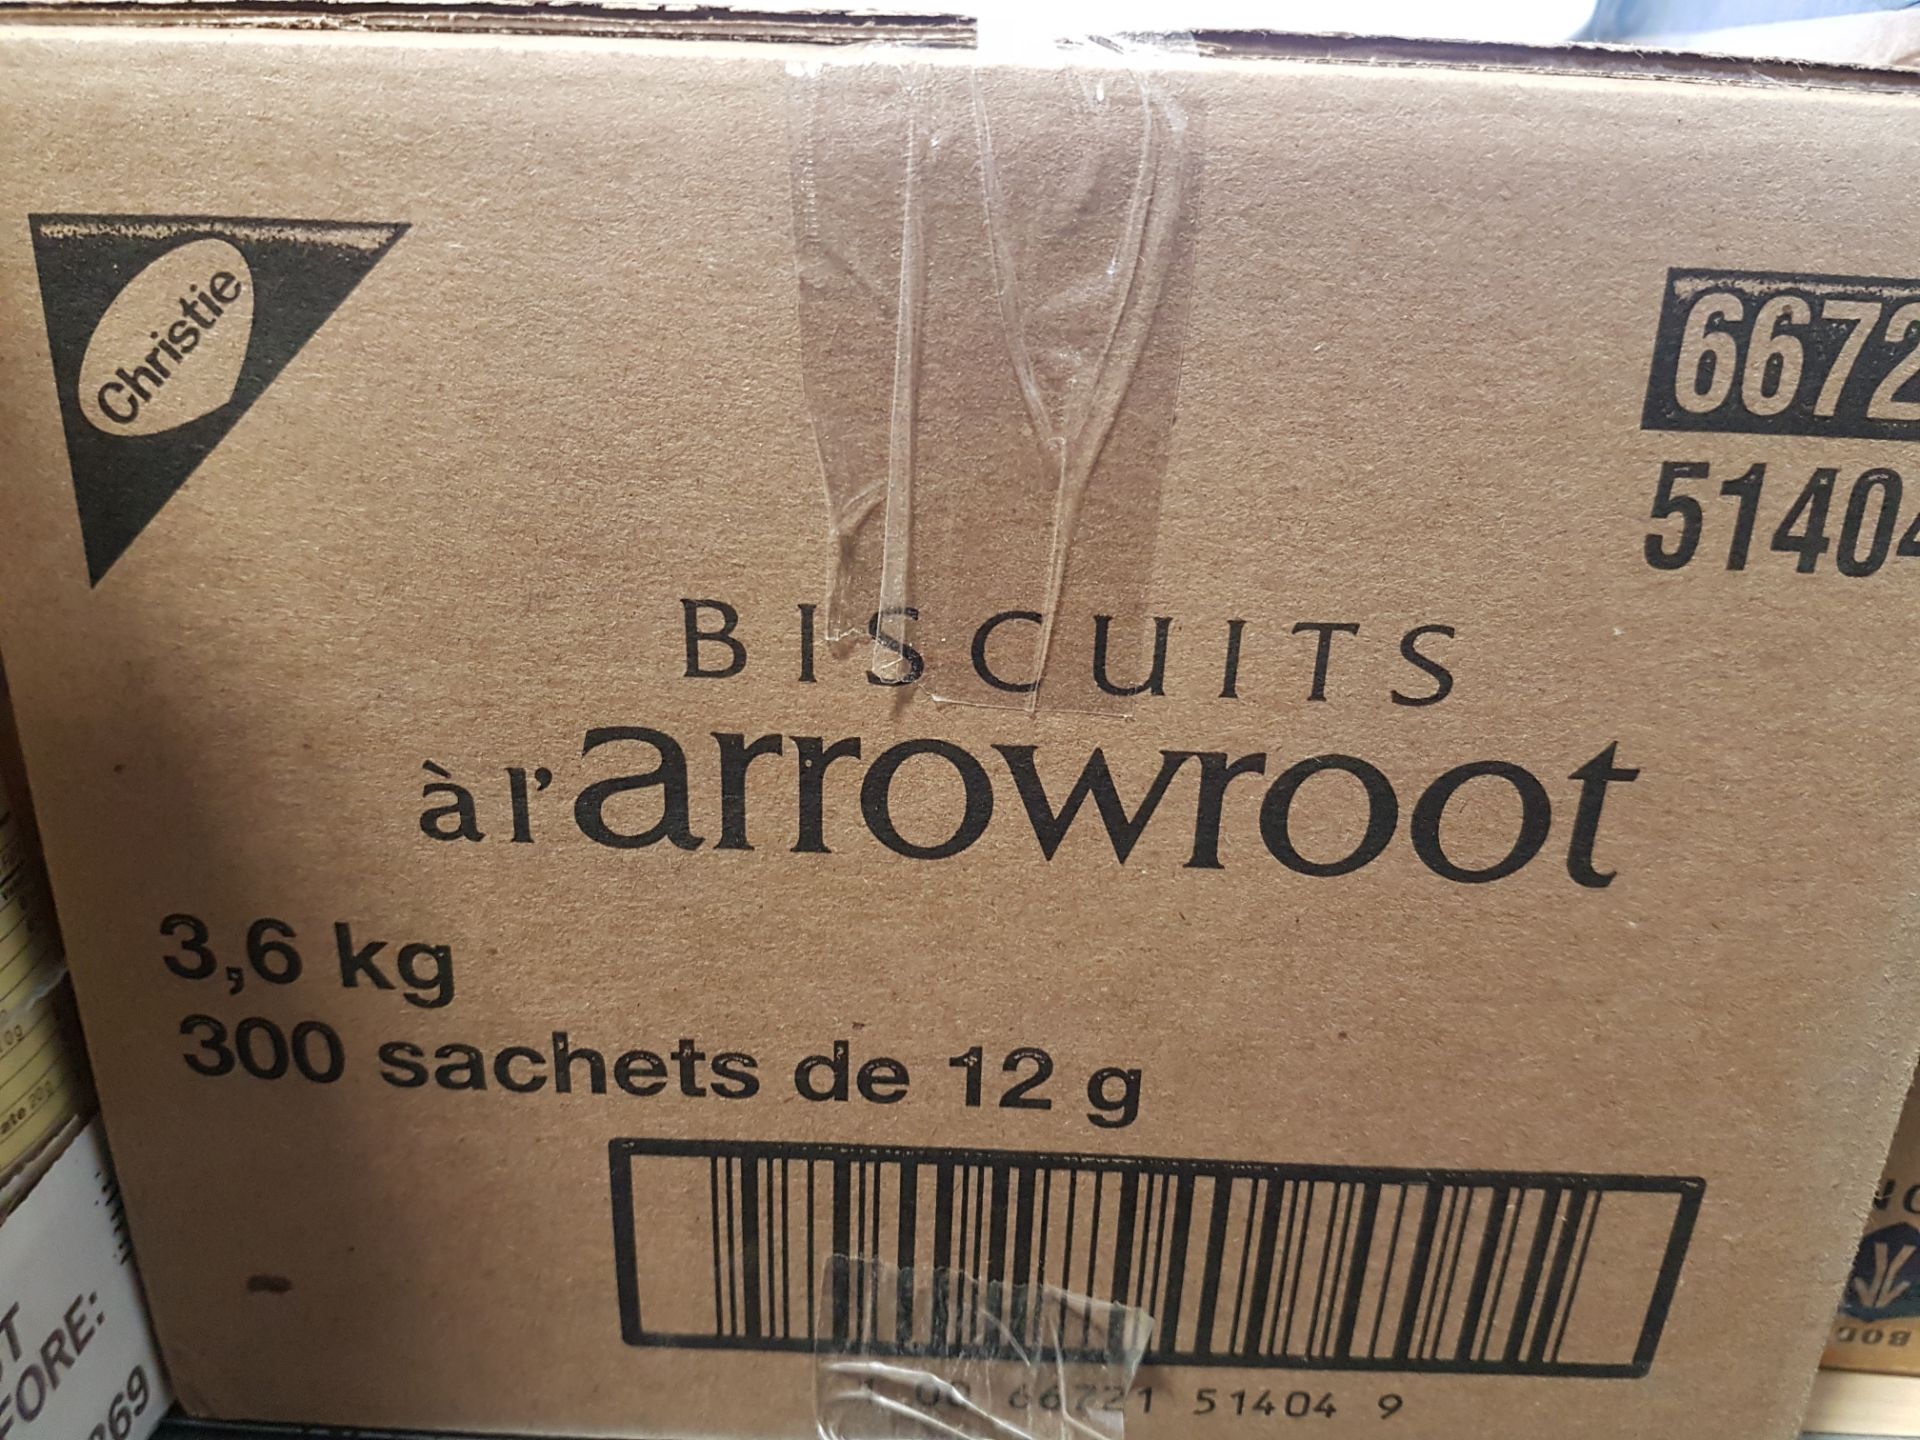 Arrowroot Cookies - 1 case